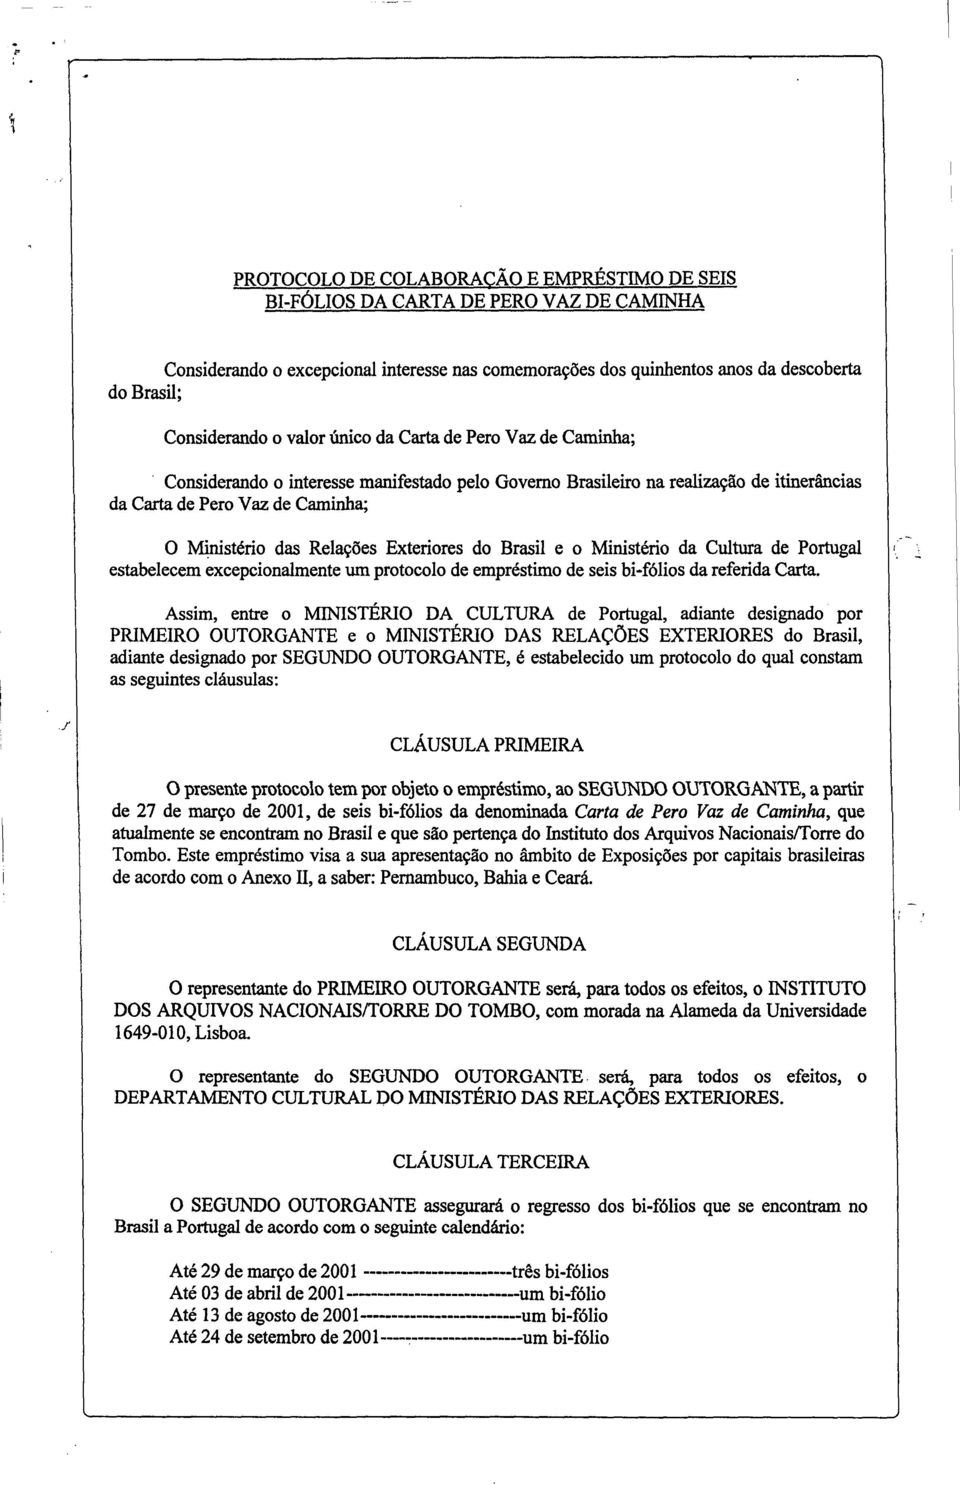 Exteriores do Brasil e o Ministério da Cultura de Portugal estabelecem excepcionalmente um protocolo de empréstimo de seis bi-fólios da referida Carta.